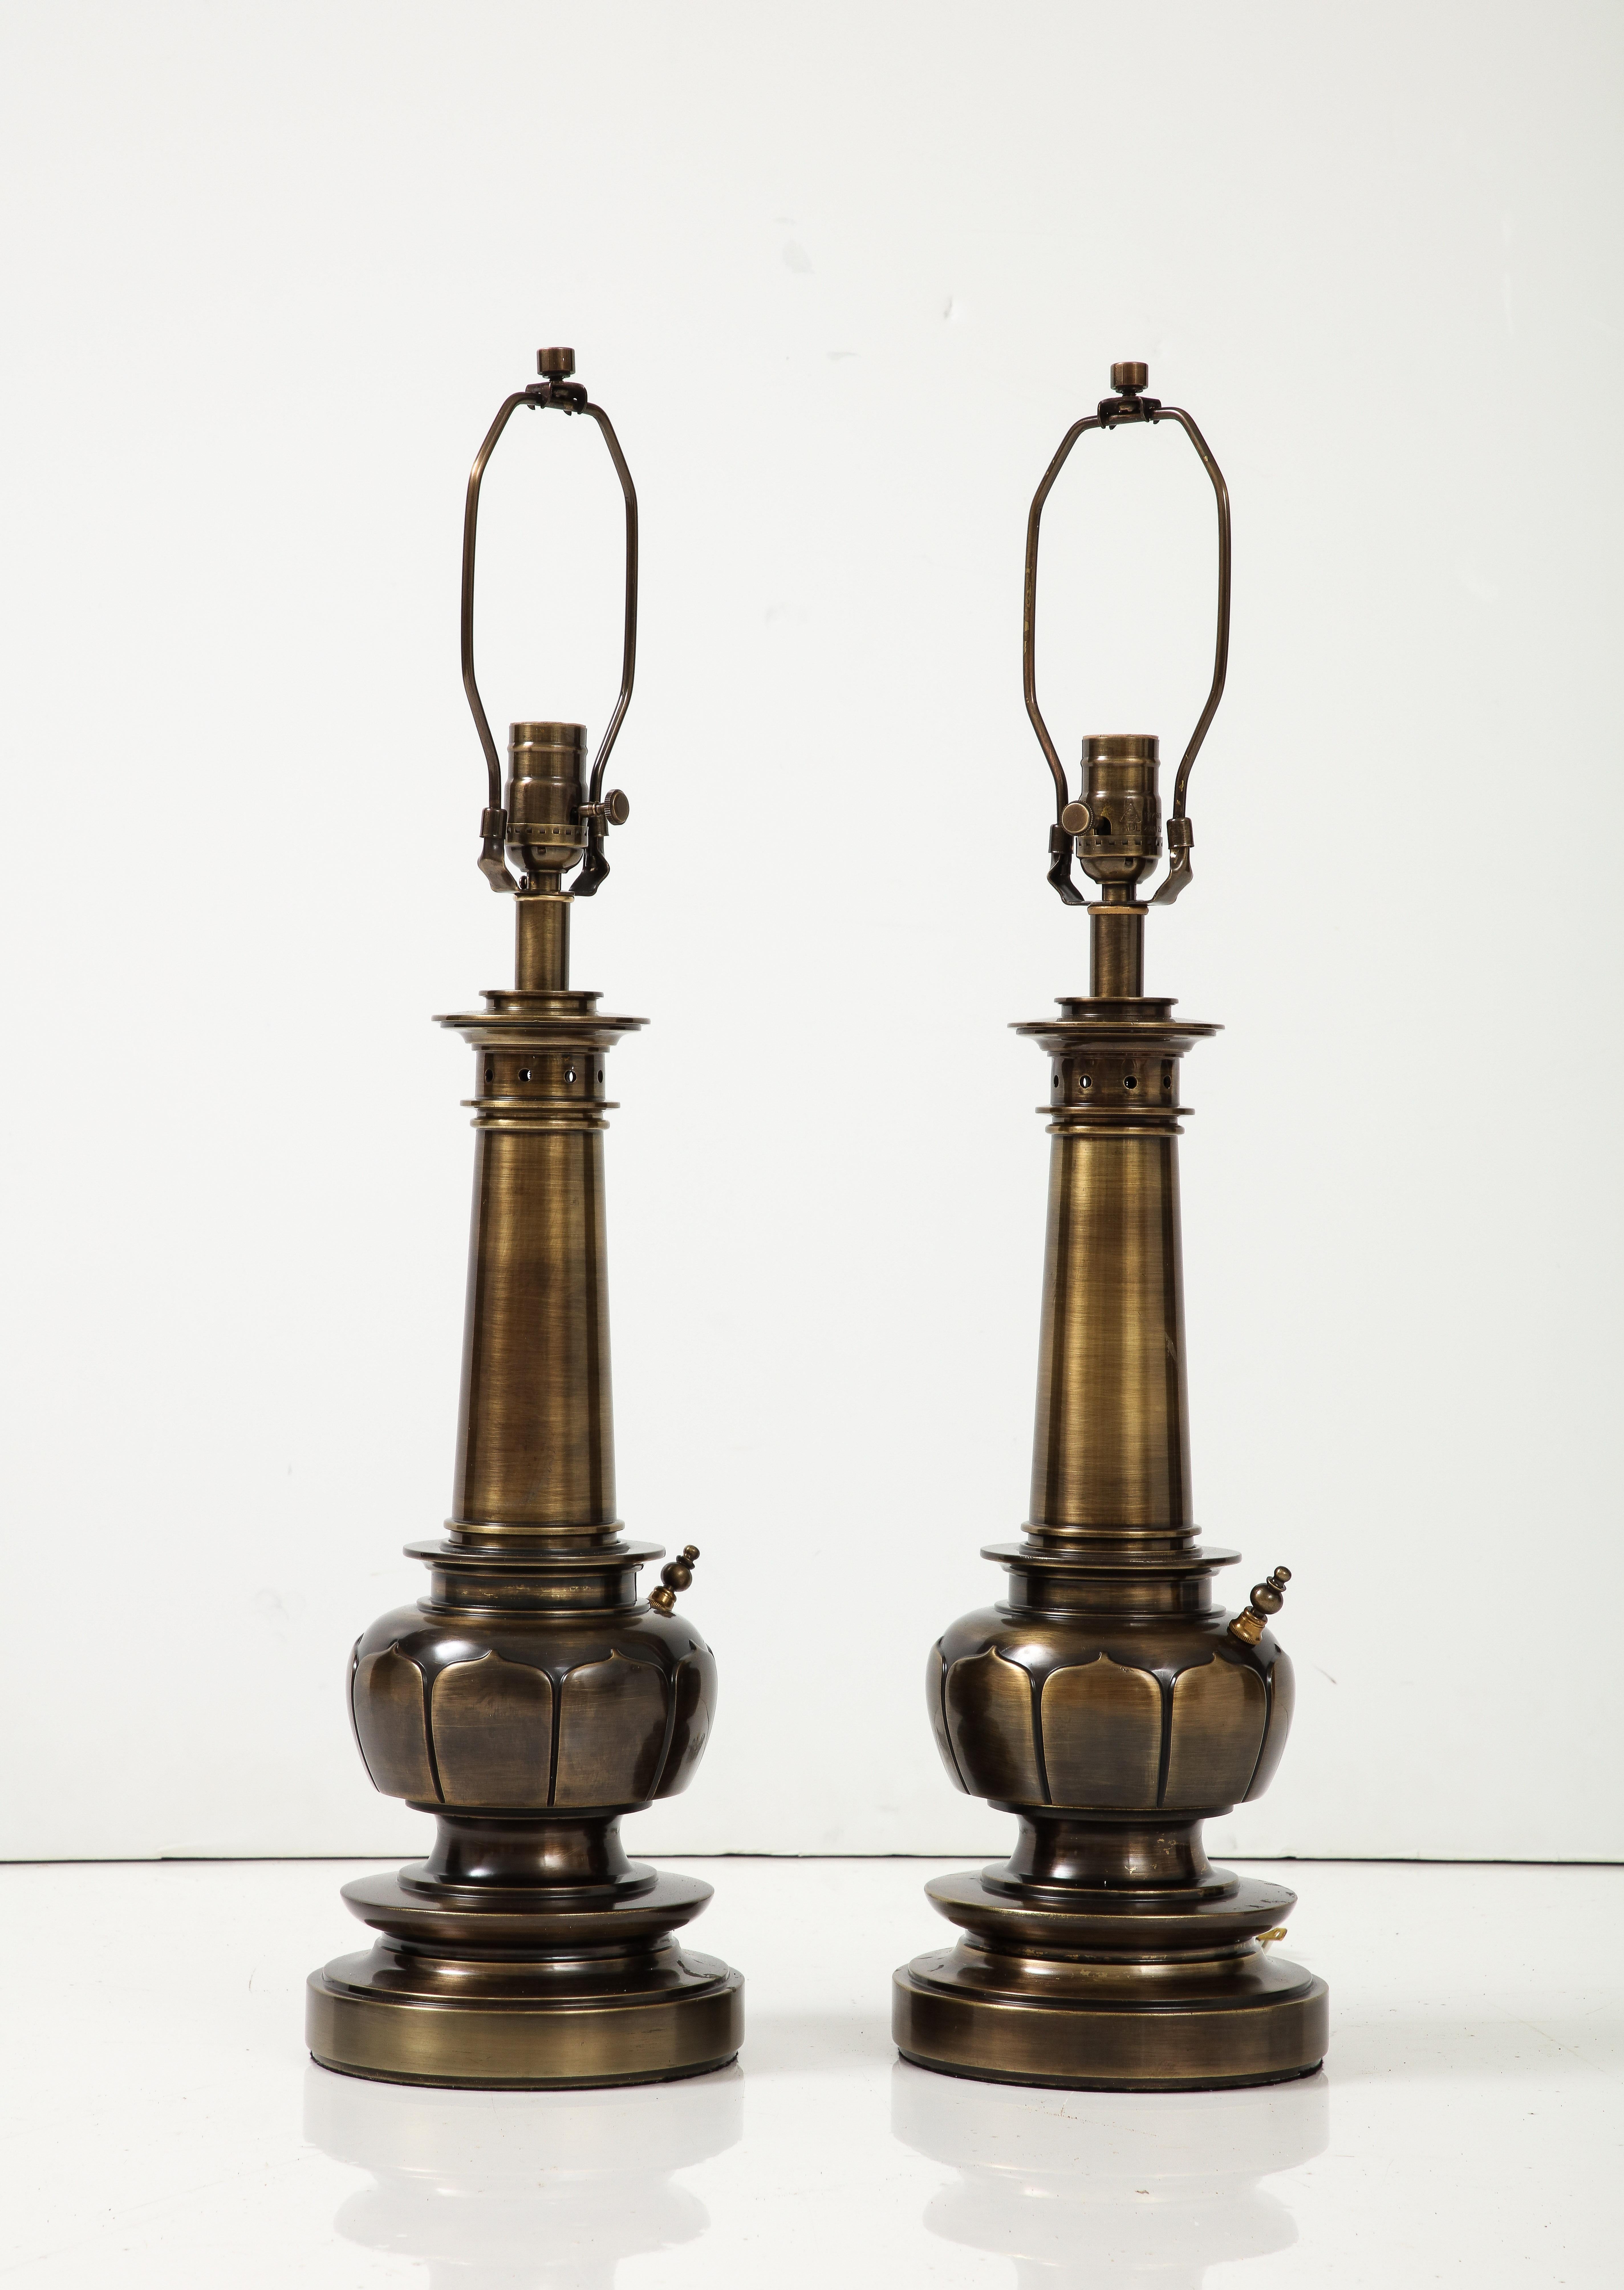 Lampes en forme de lotus du milieu du siècle dans une finition personnalisée en bronze/laiton vieilli. Les lampes ont été recâblées pour être utilisées aux États-Unis. Elles fonctionnent avec des ampoules de type edison d'une puissance maximale de